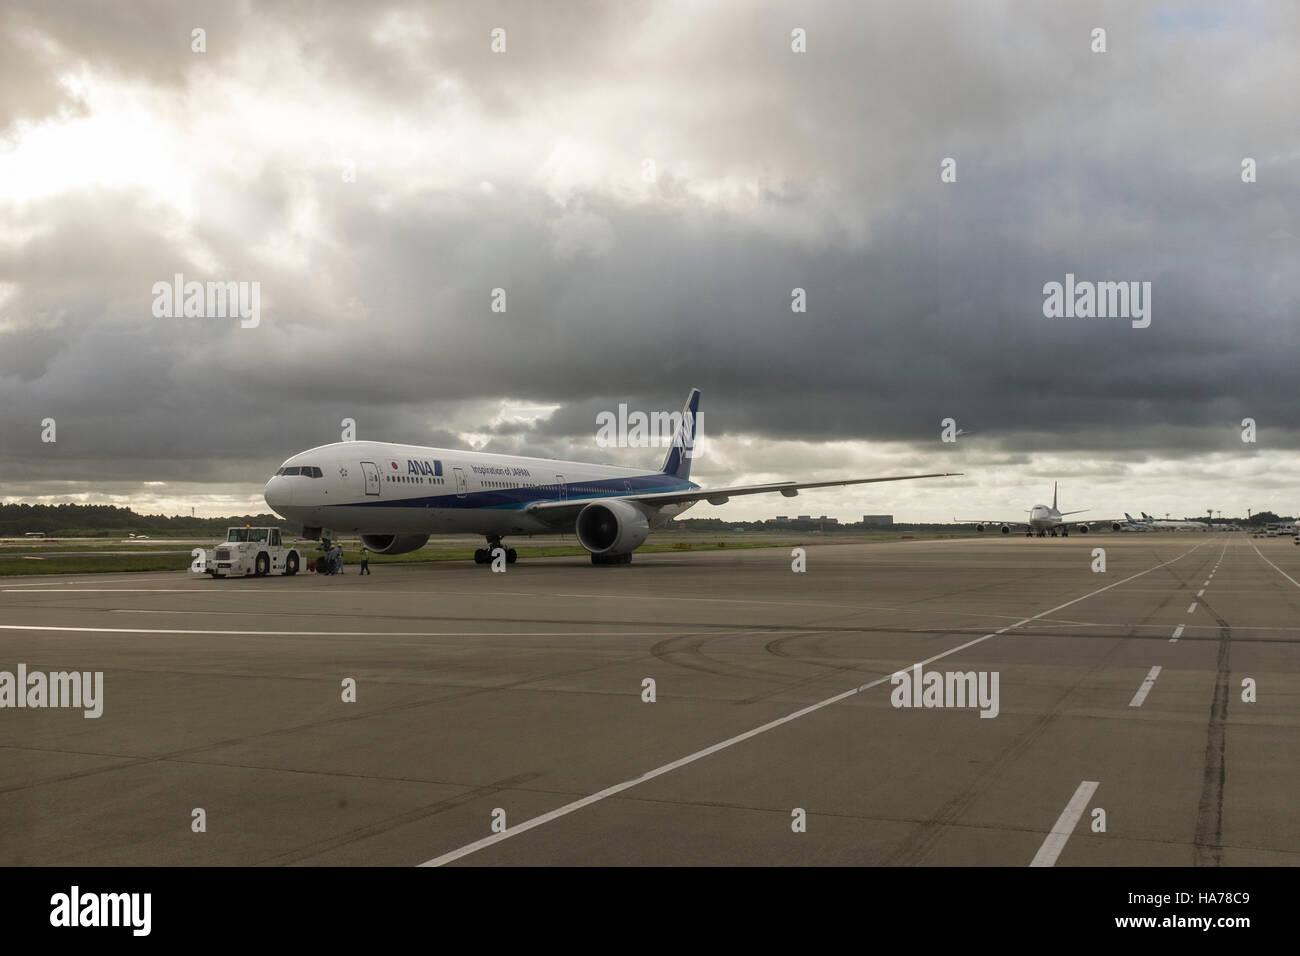 An ANA aircraft on the tarmac with gloomy skies, at Narita airport, Japan. Stock Photo